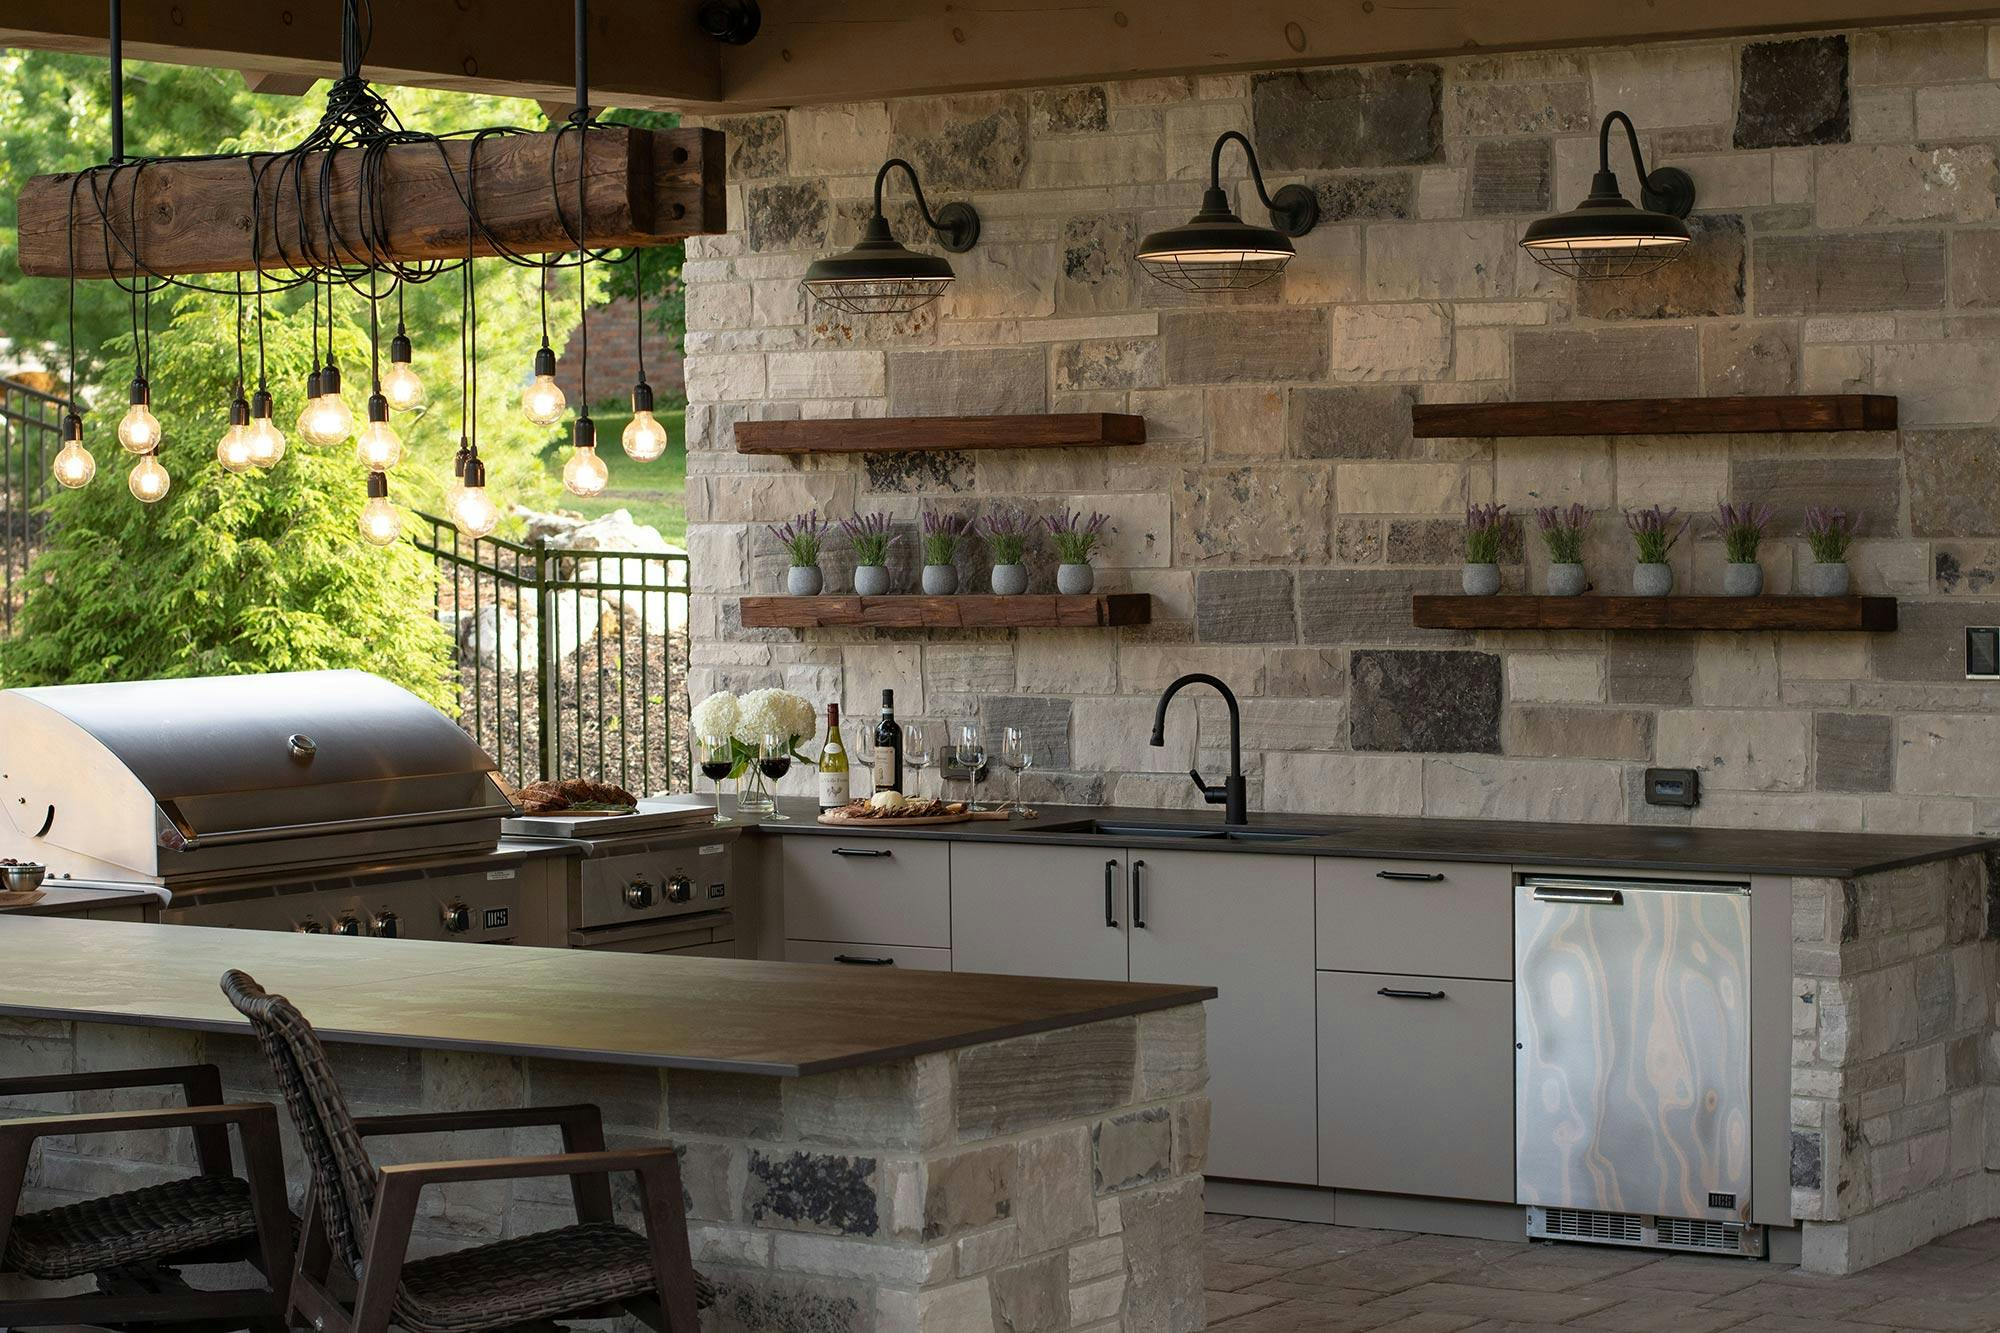 Numero immagine 32 della sezione corrente di The perfect rustic outdoor kitchen with DKTN and Urban Bonfire di Cosentino Italia